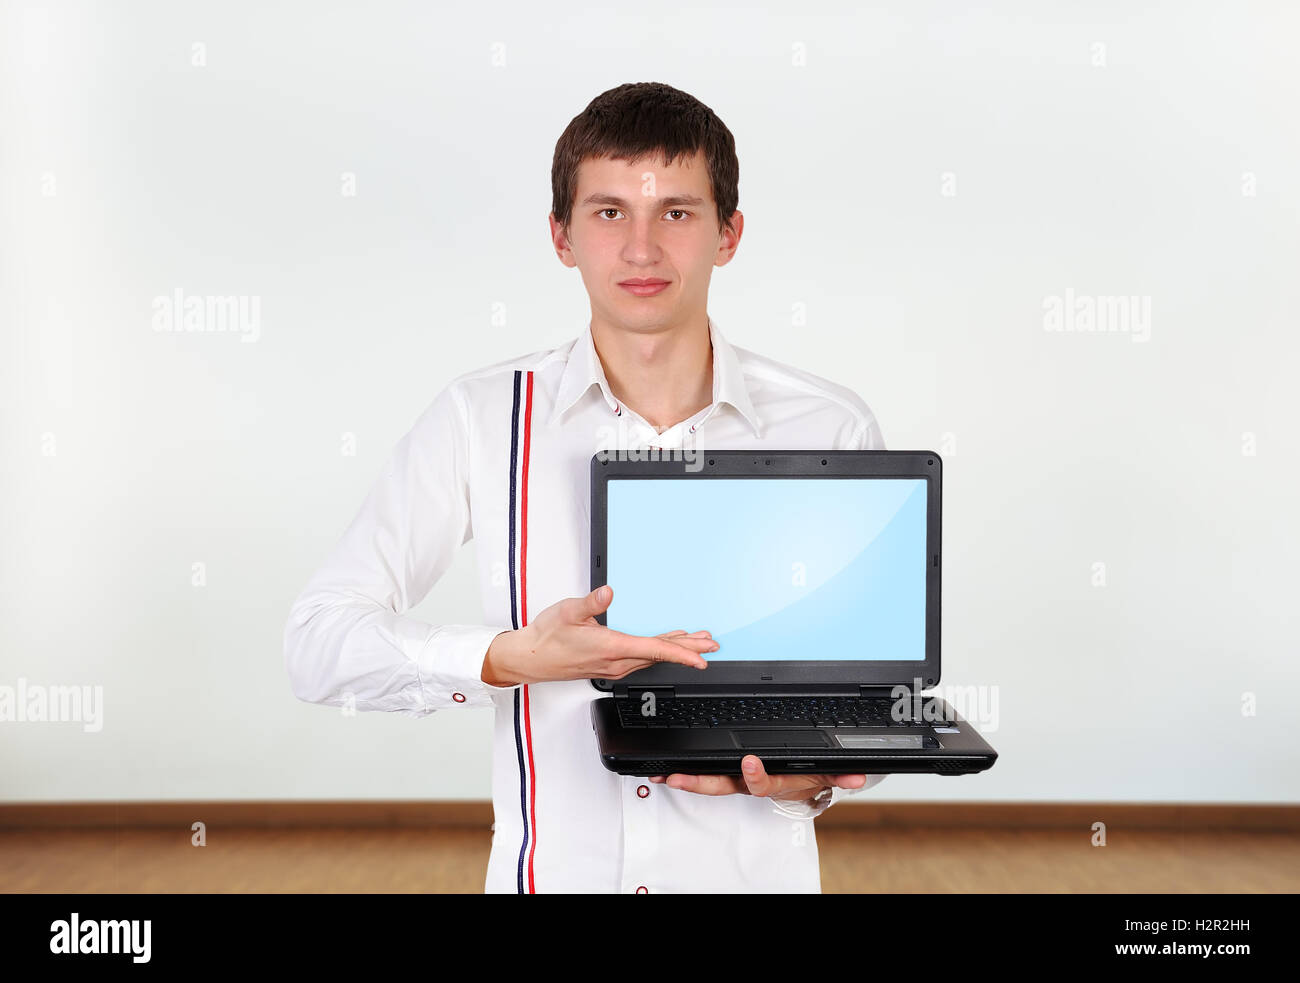 Boy holding laptop Banque D'Images